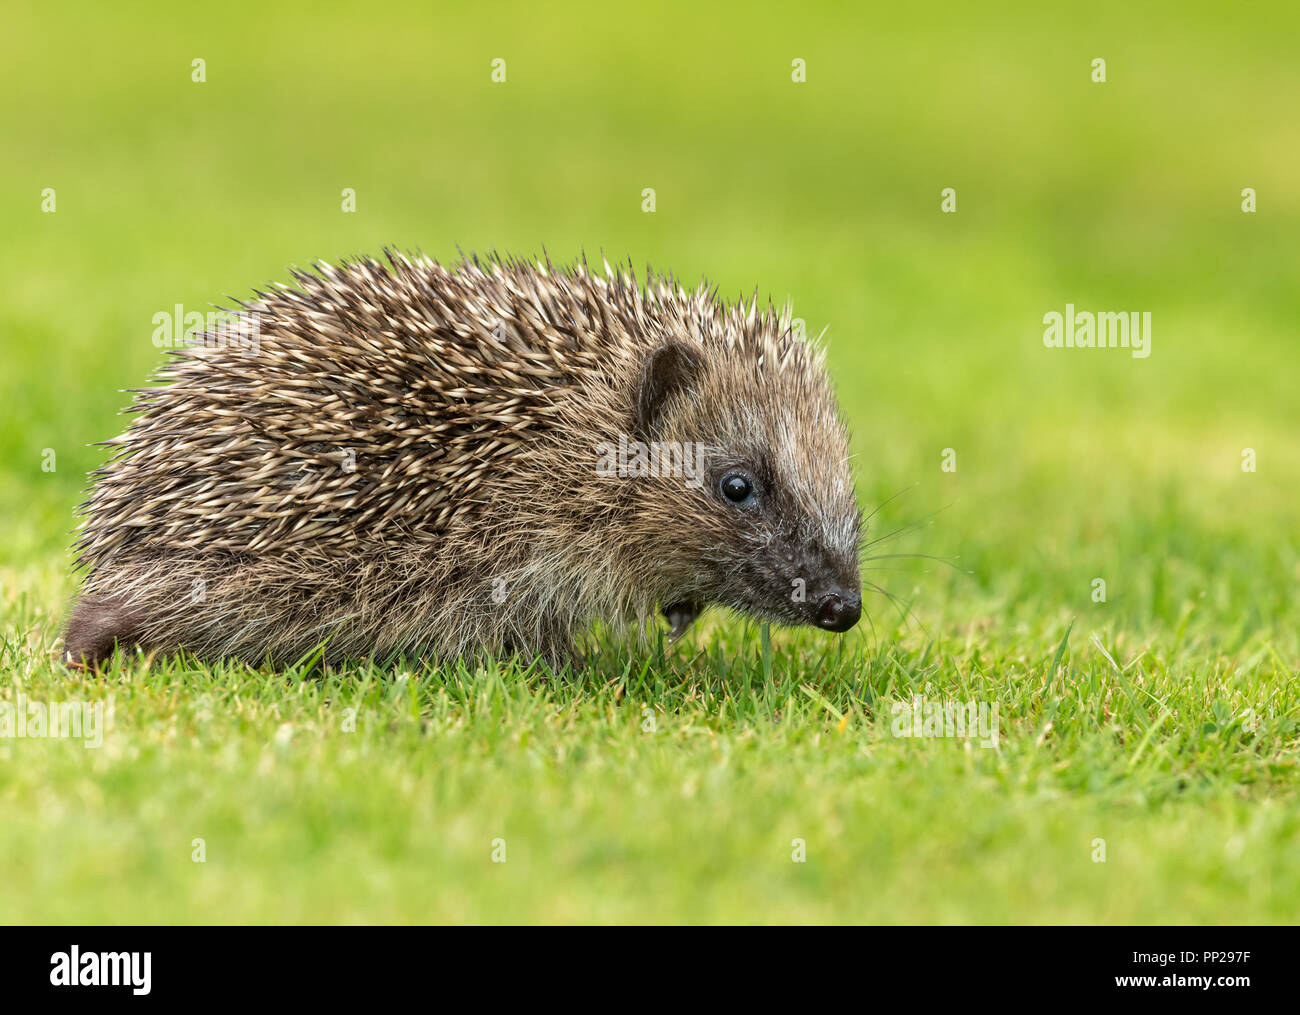 Riccio, giovani, selvatici, nativo, hedgehog europea, rivolto verso destra nel giardino naturale habitat. Nome scientifico: Erinaceus europaeus. Posizione orizzontale Foto Stock